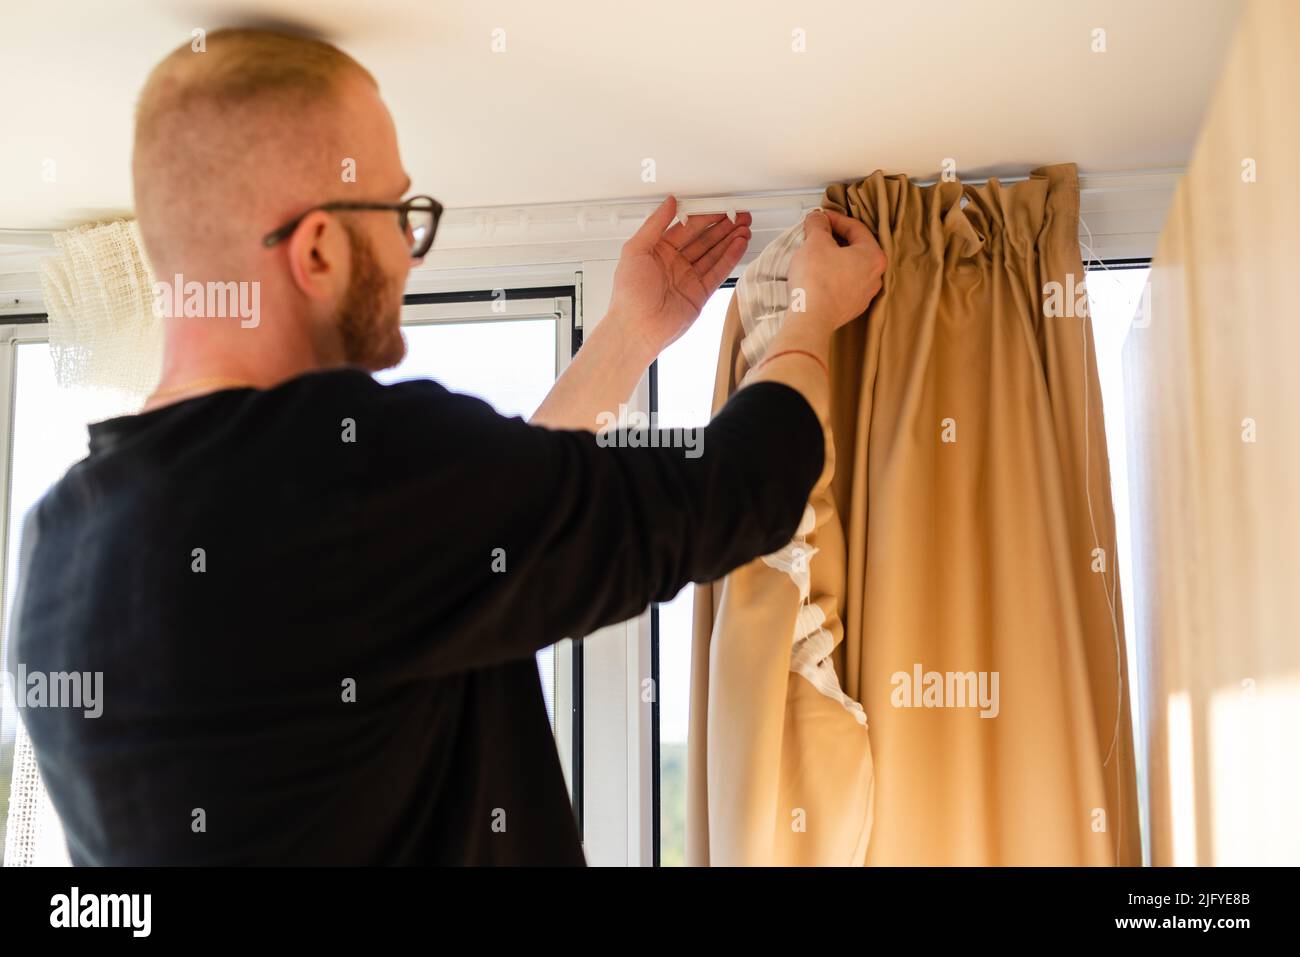 Mann hängt Vorhänge an den Plastikhaken Stockfotografie - Alamy